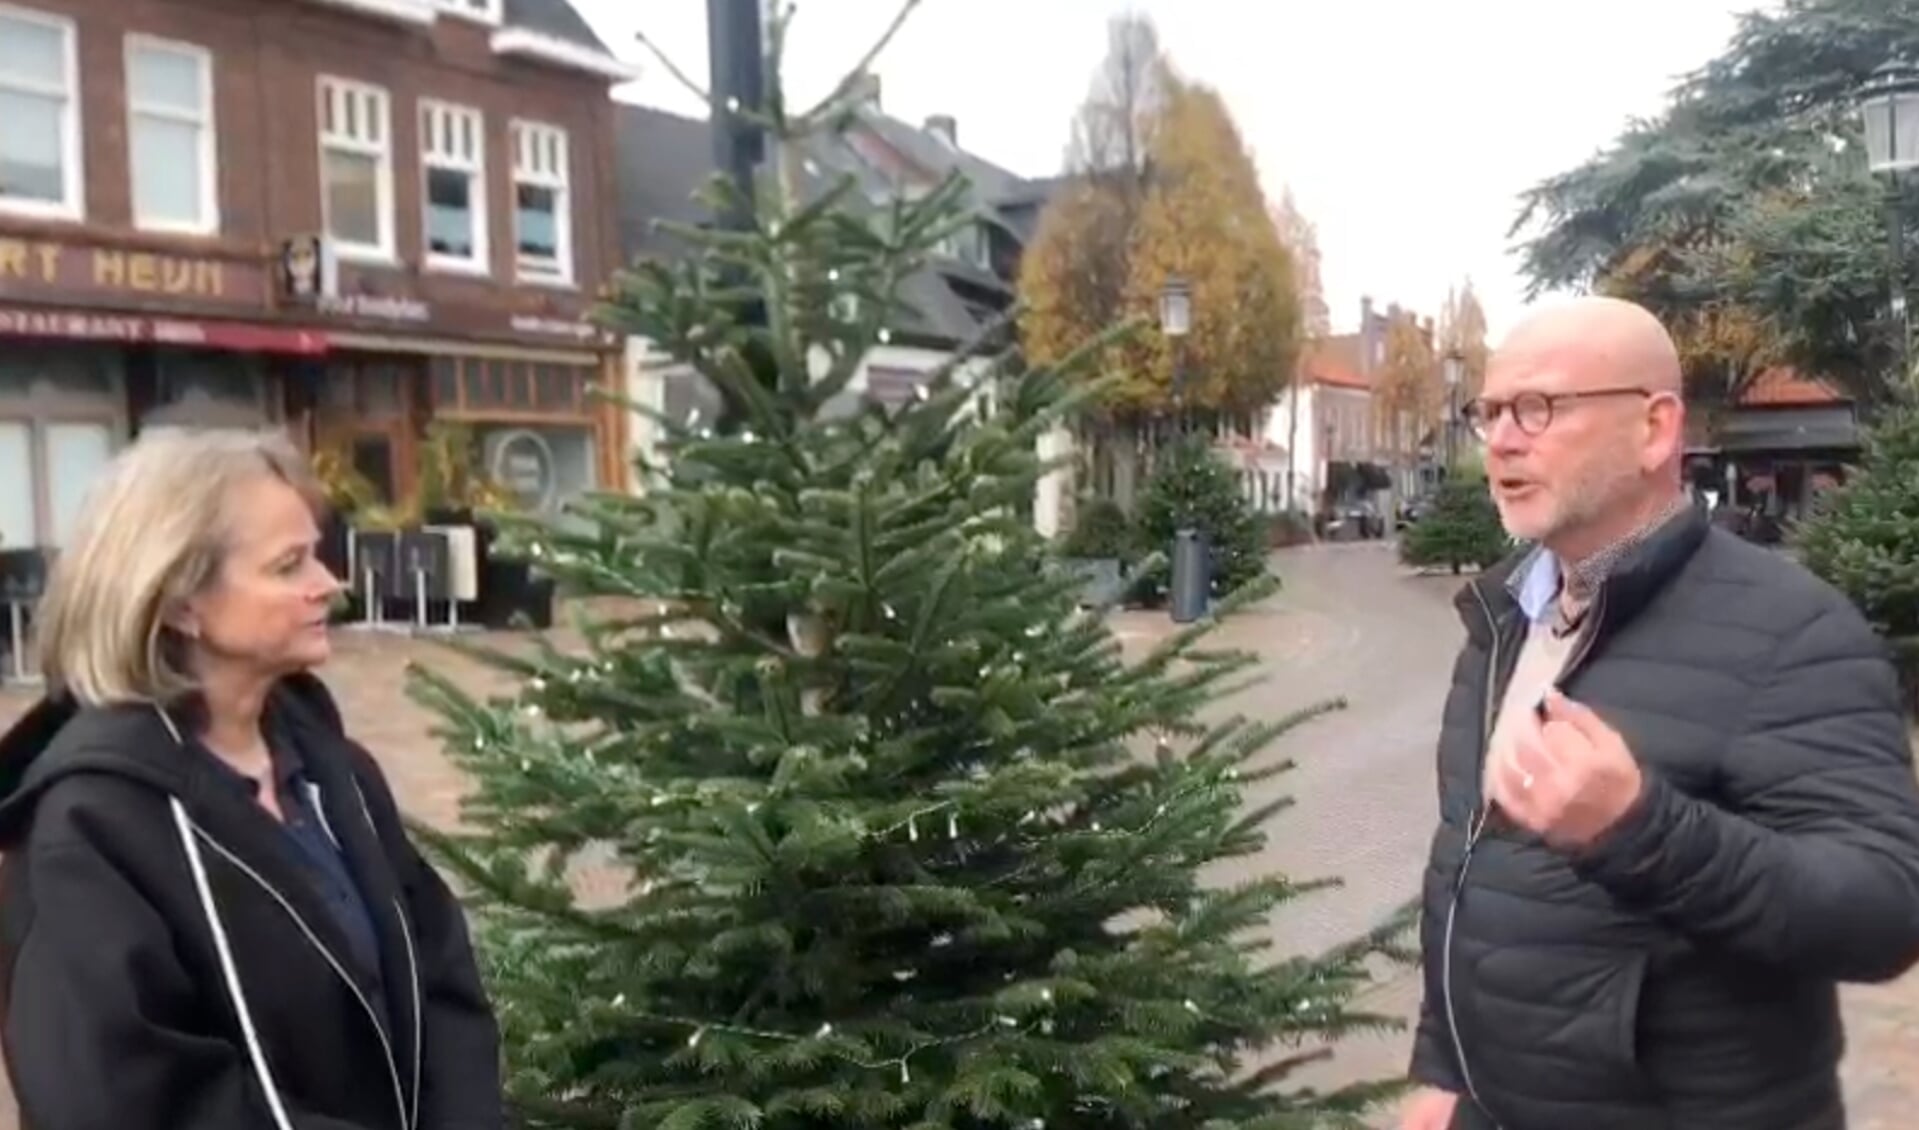 Still uit het filmpje dat op social media is geplaatst: burgemeester Lies Spruit en Ton Freriks in gesprek over de challenge.